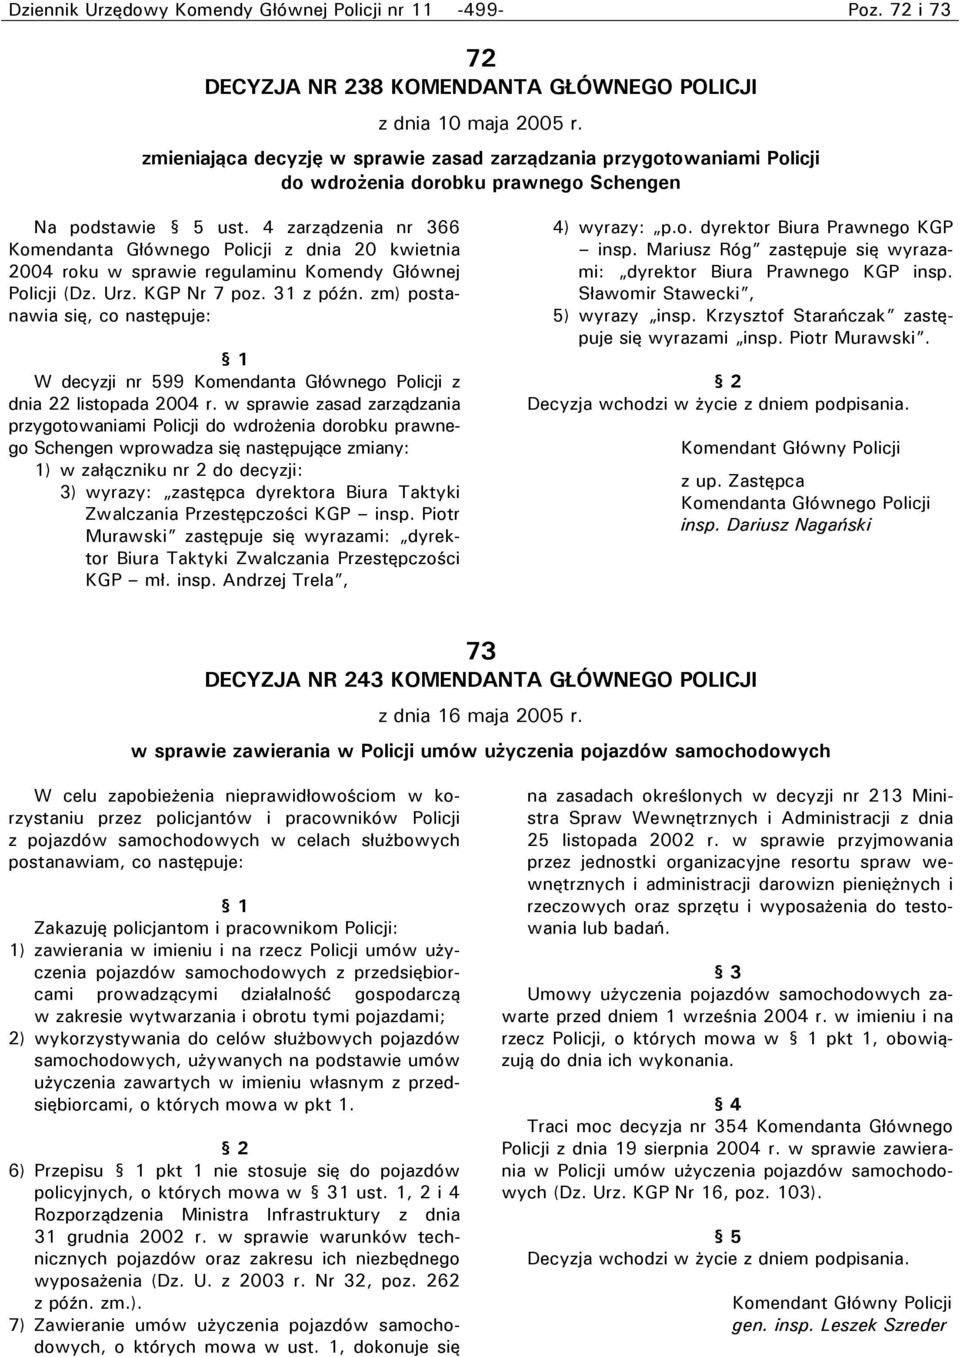 4 zarządzenia nr 366 Komendanta Głównego Policji z dnia 20 kwietnia 2004 roku w sprawie regulaminu Komendy Głównej Policji (Dz. Urz. KGP Nr 7 poz. 31 z późn.